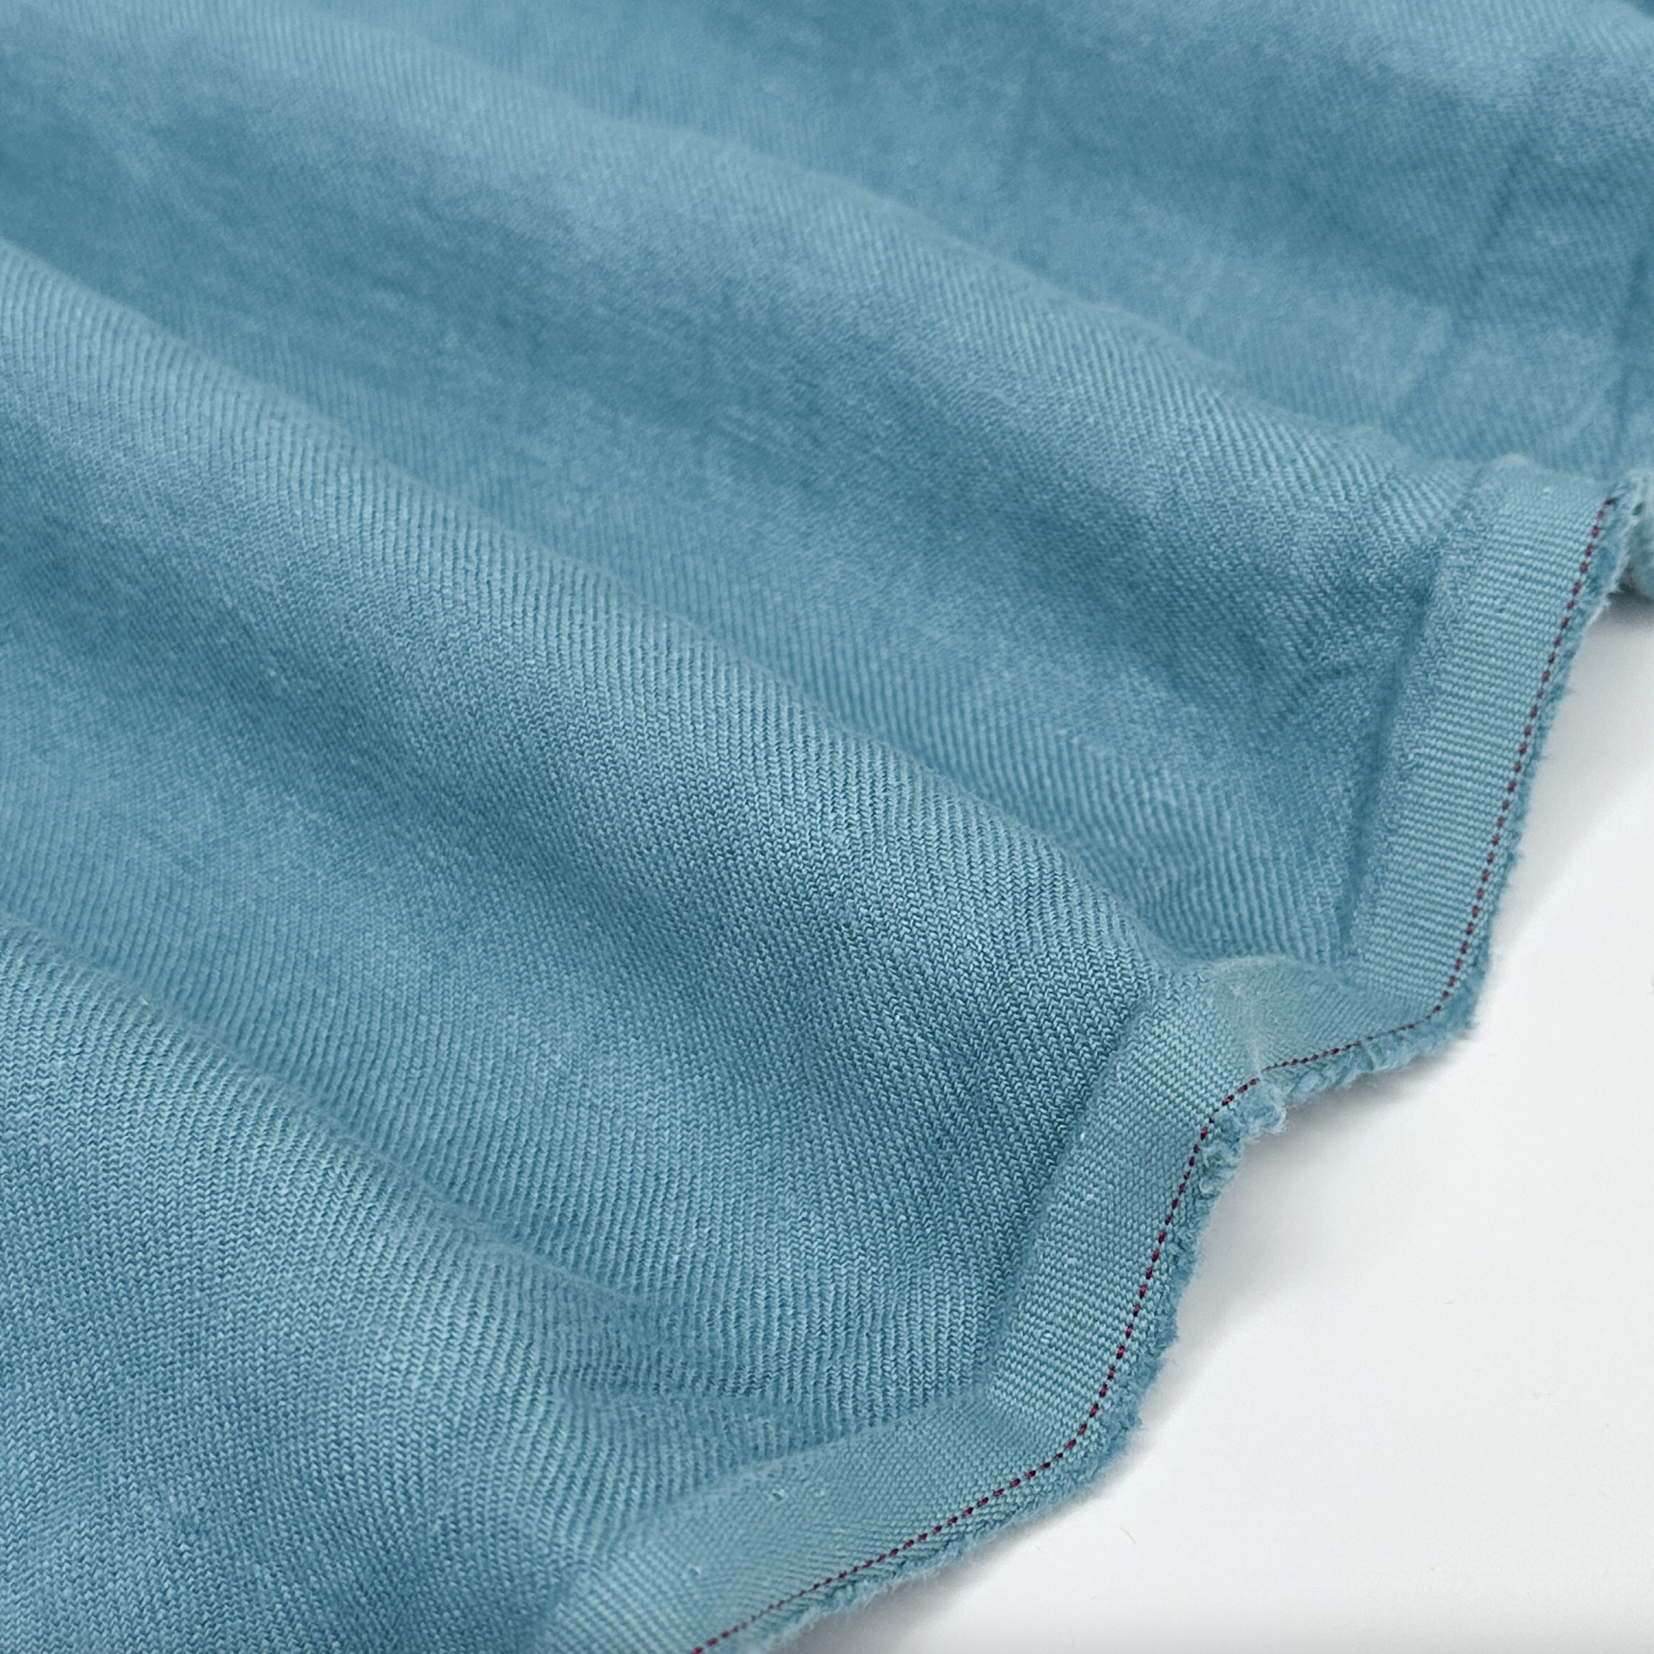 Gordon Fabrics Ltd. Nomad Linen Twill Ocean